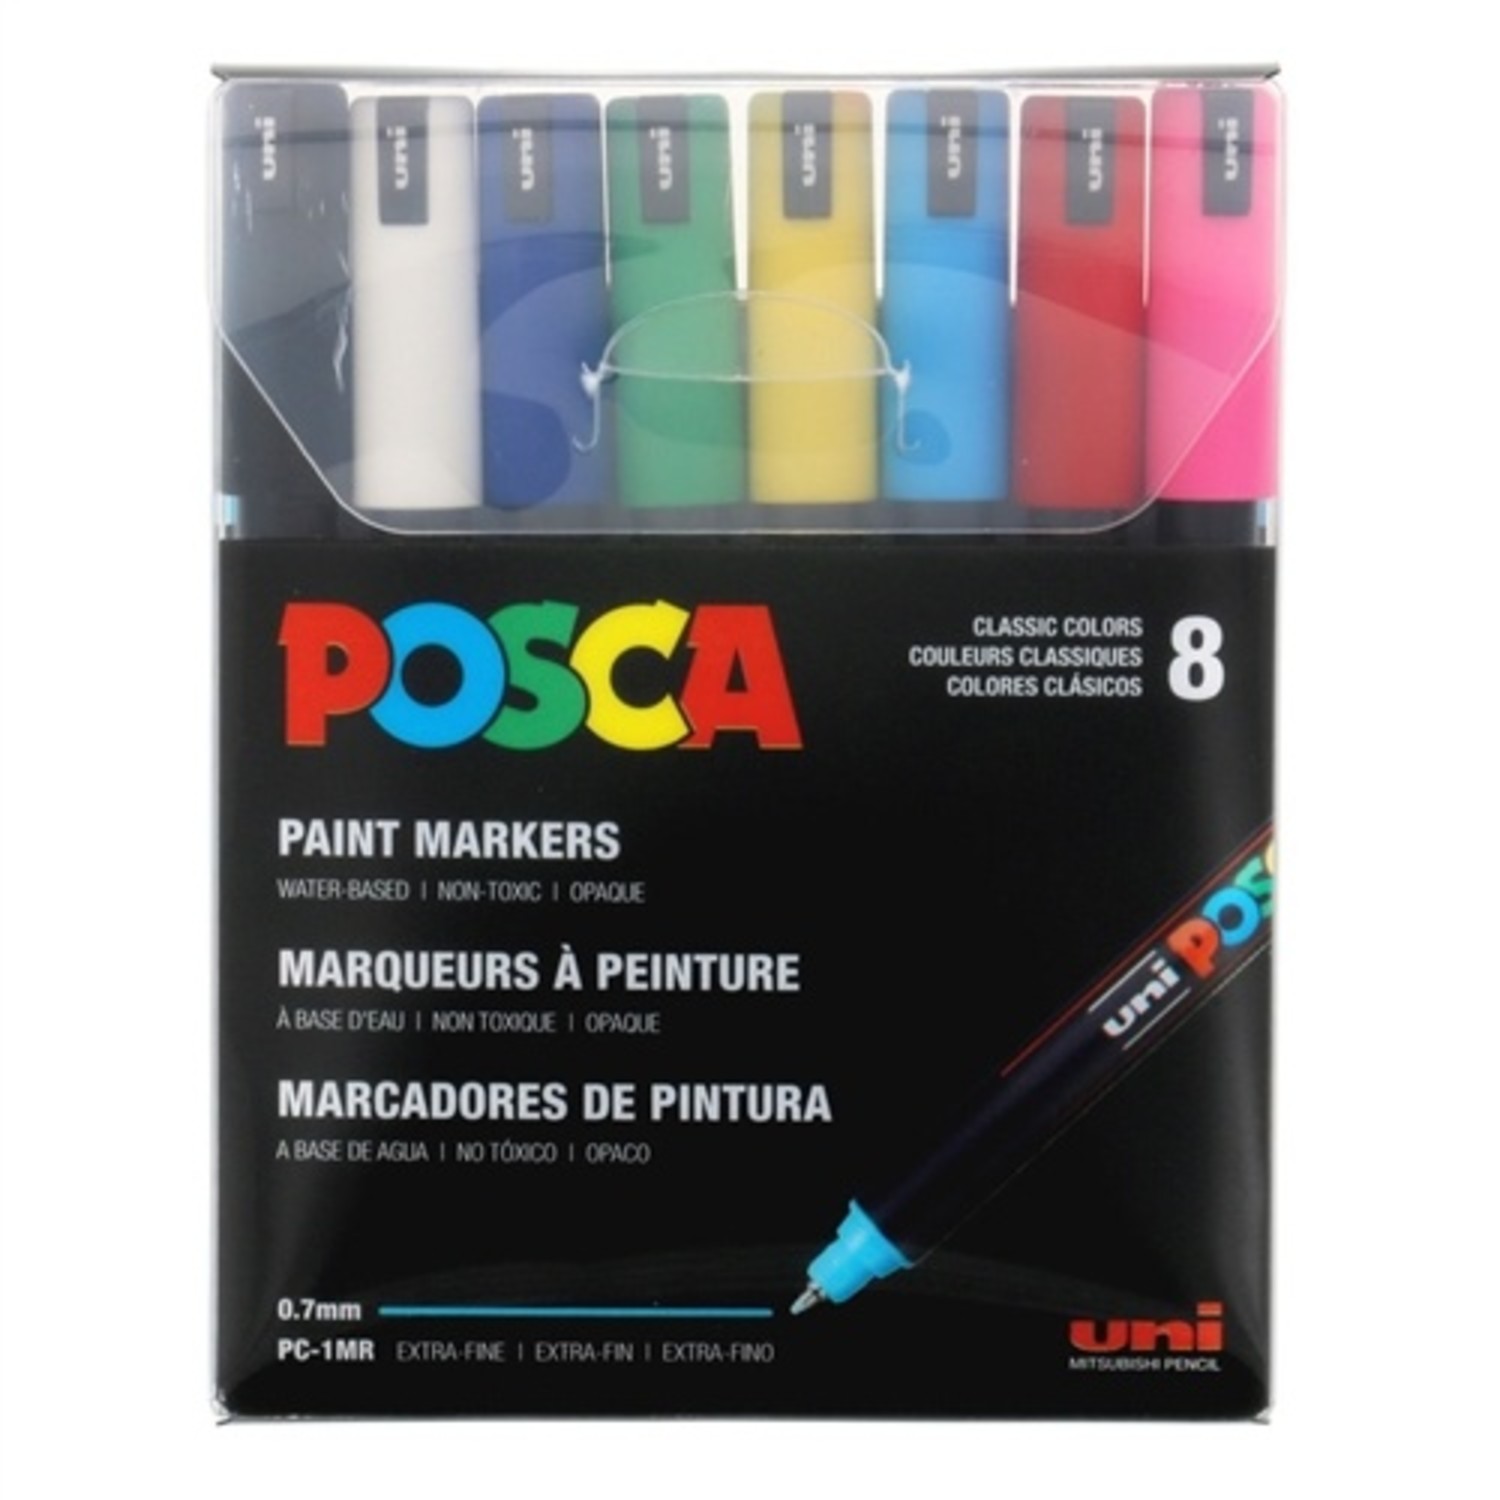 POSCA Medium Paint Marker